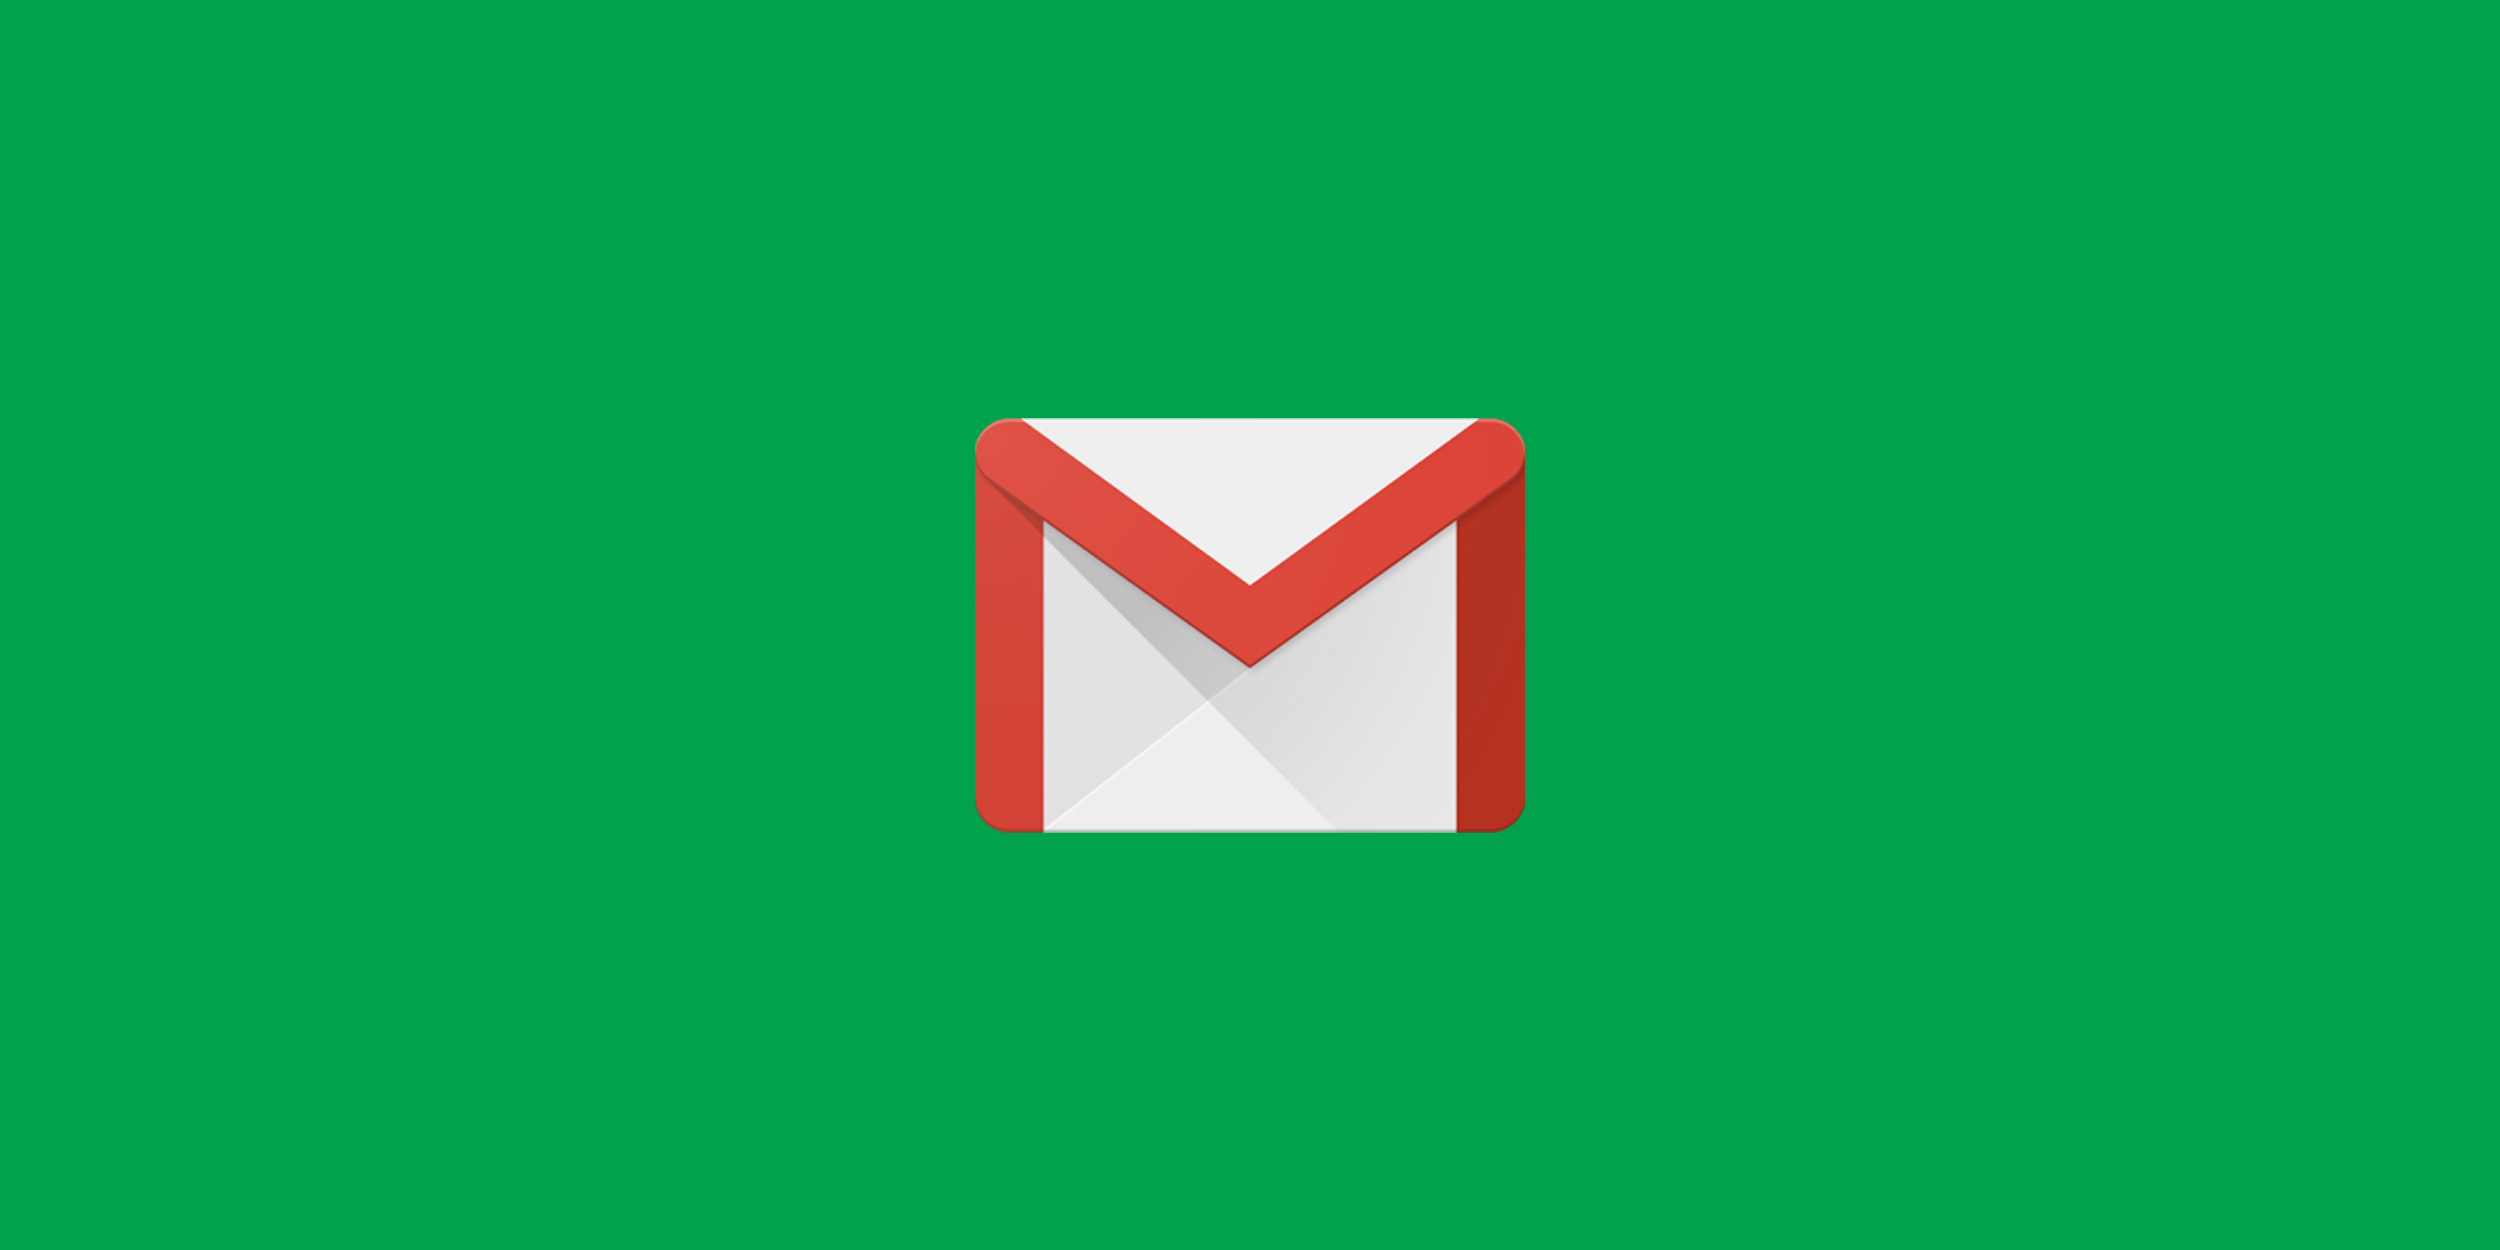 Как изменить тему письма в Gmail